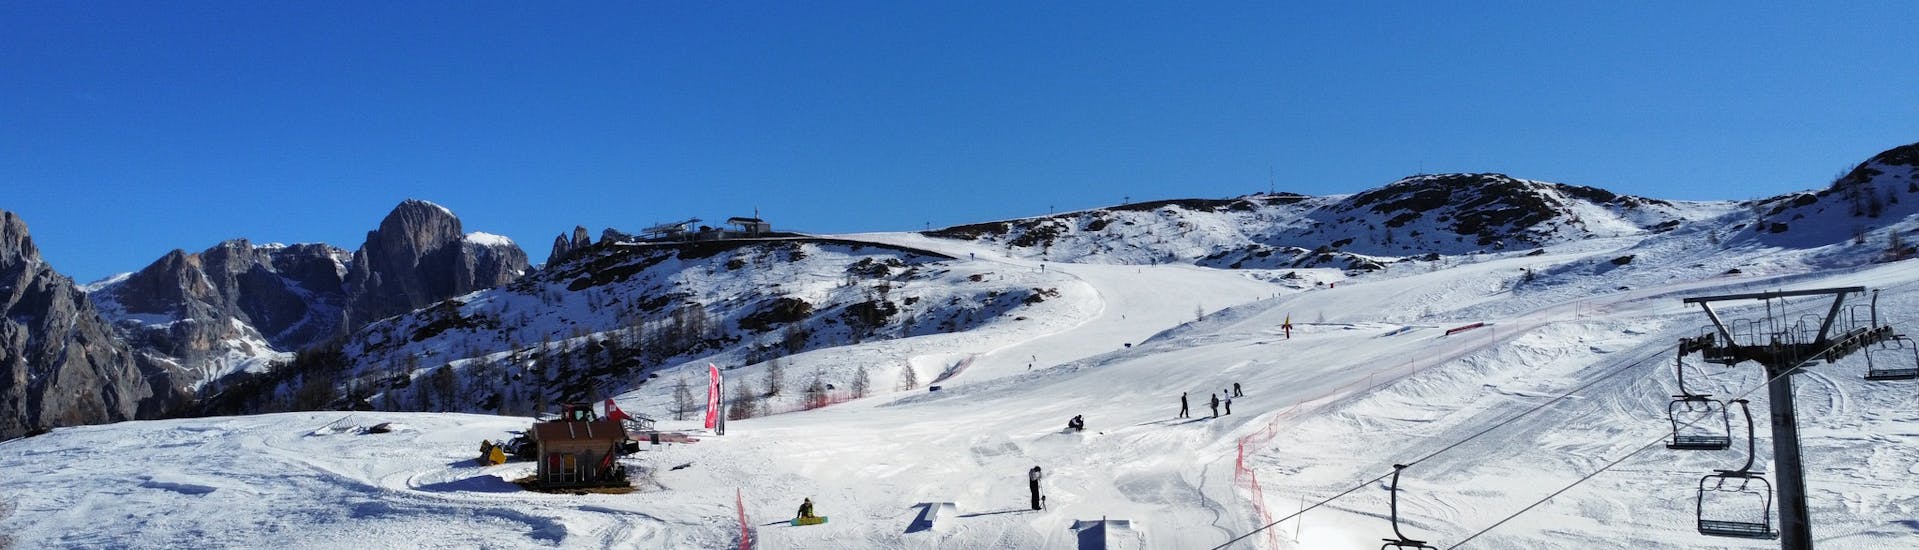 Het snowpark van San Martino di Castrozza, waar rijders nieuwe trucs kunnen uitproberen tijdens de privélessen snowboarden voor alle niveaus met Scuola Italiana Sci Dolomiti San Martino di Castrozza.